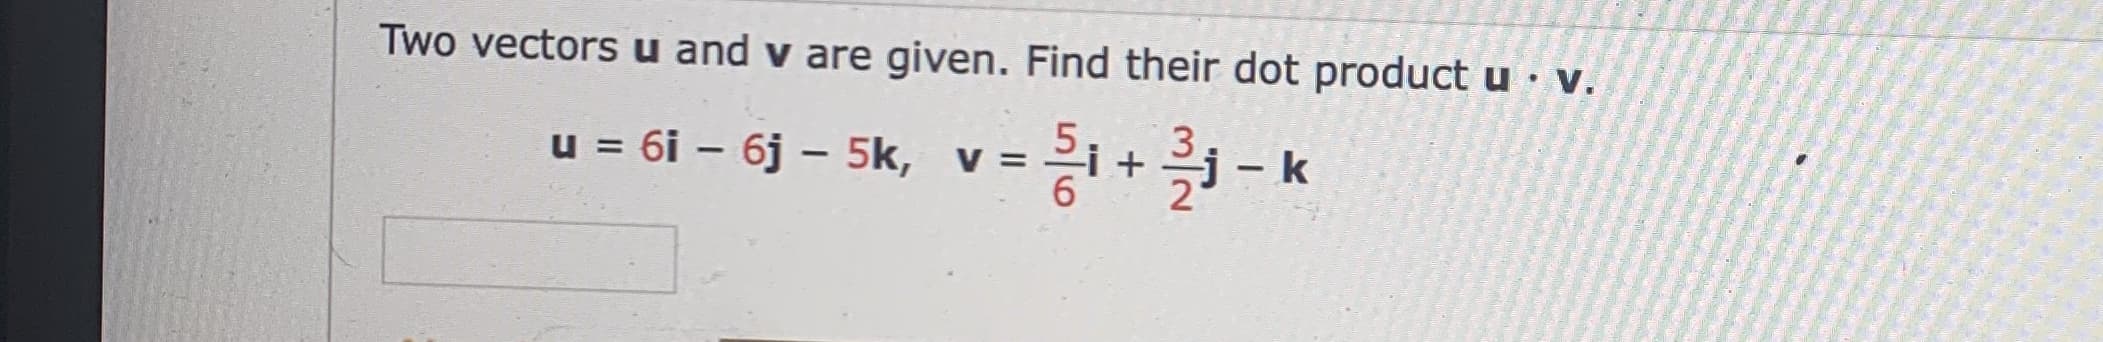 Two vectors u and v are given. Find their dot product u v.
u = 6i – 6j – 5k, v =
I
